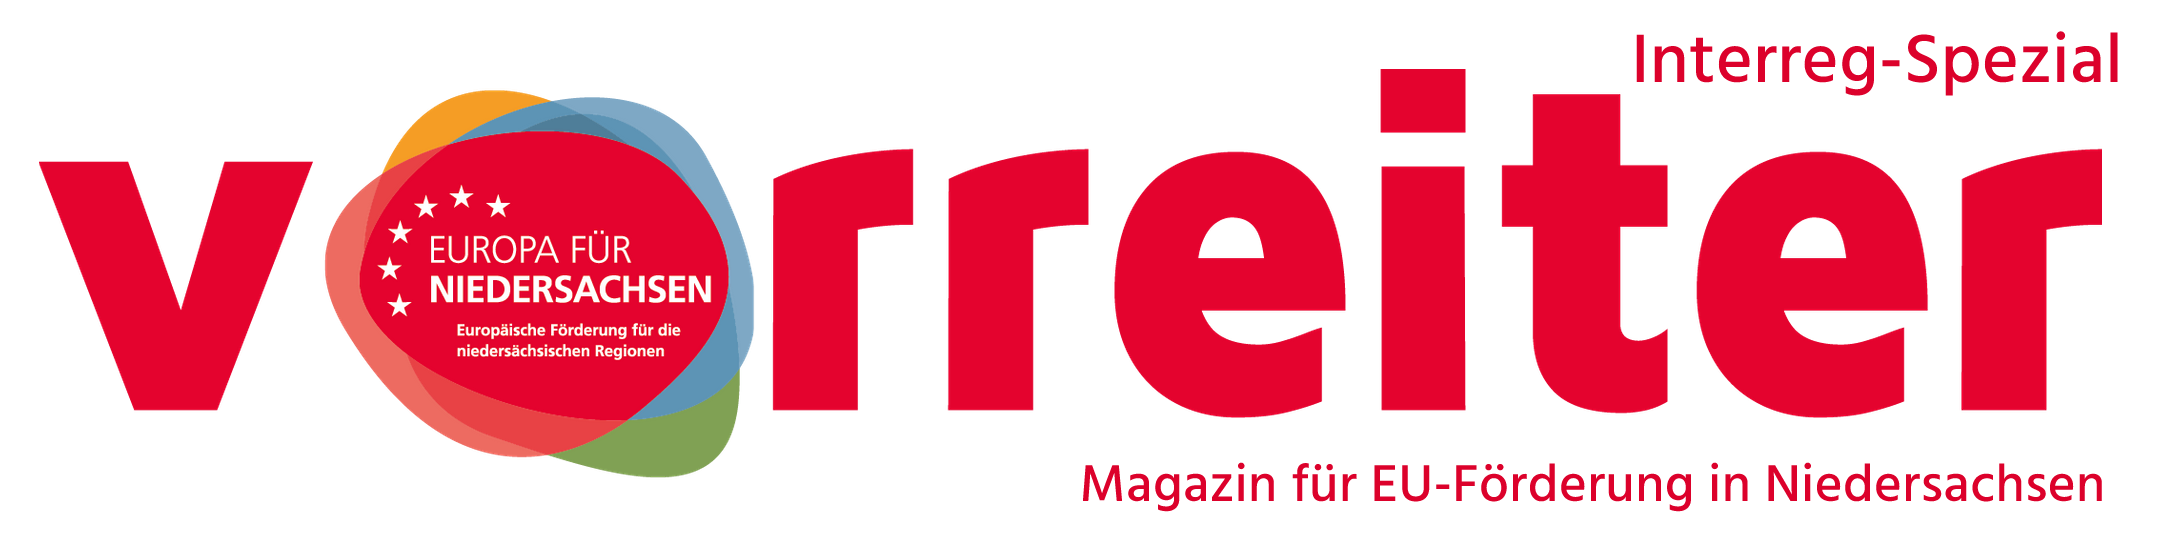 Vorreiter-Magazin Logo